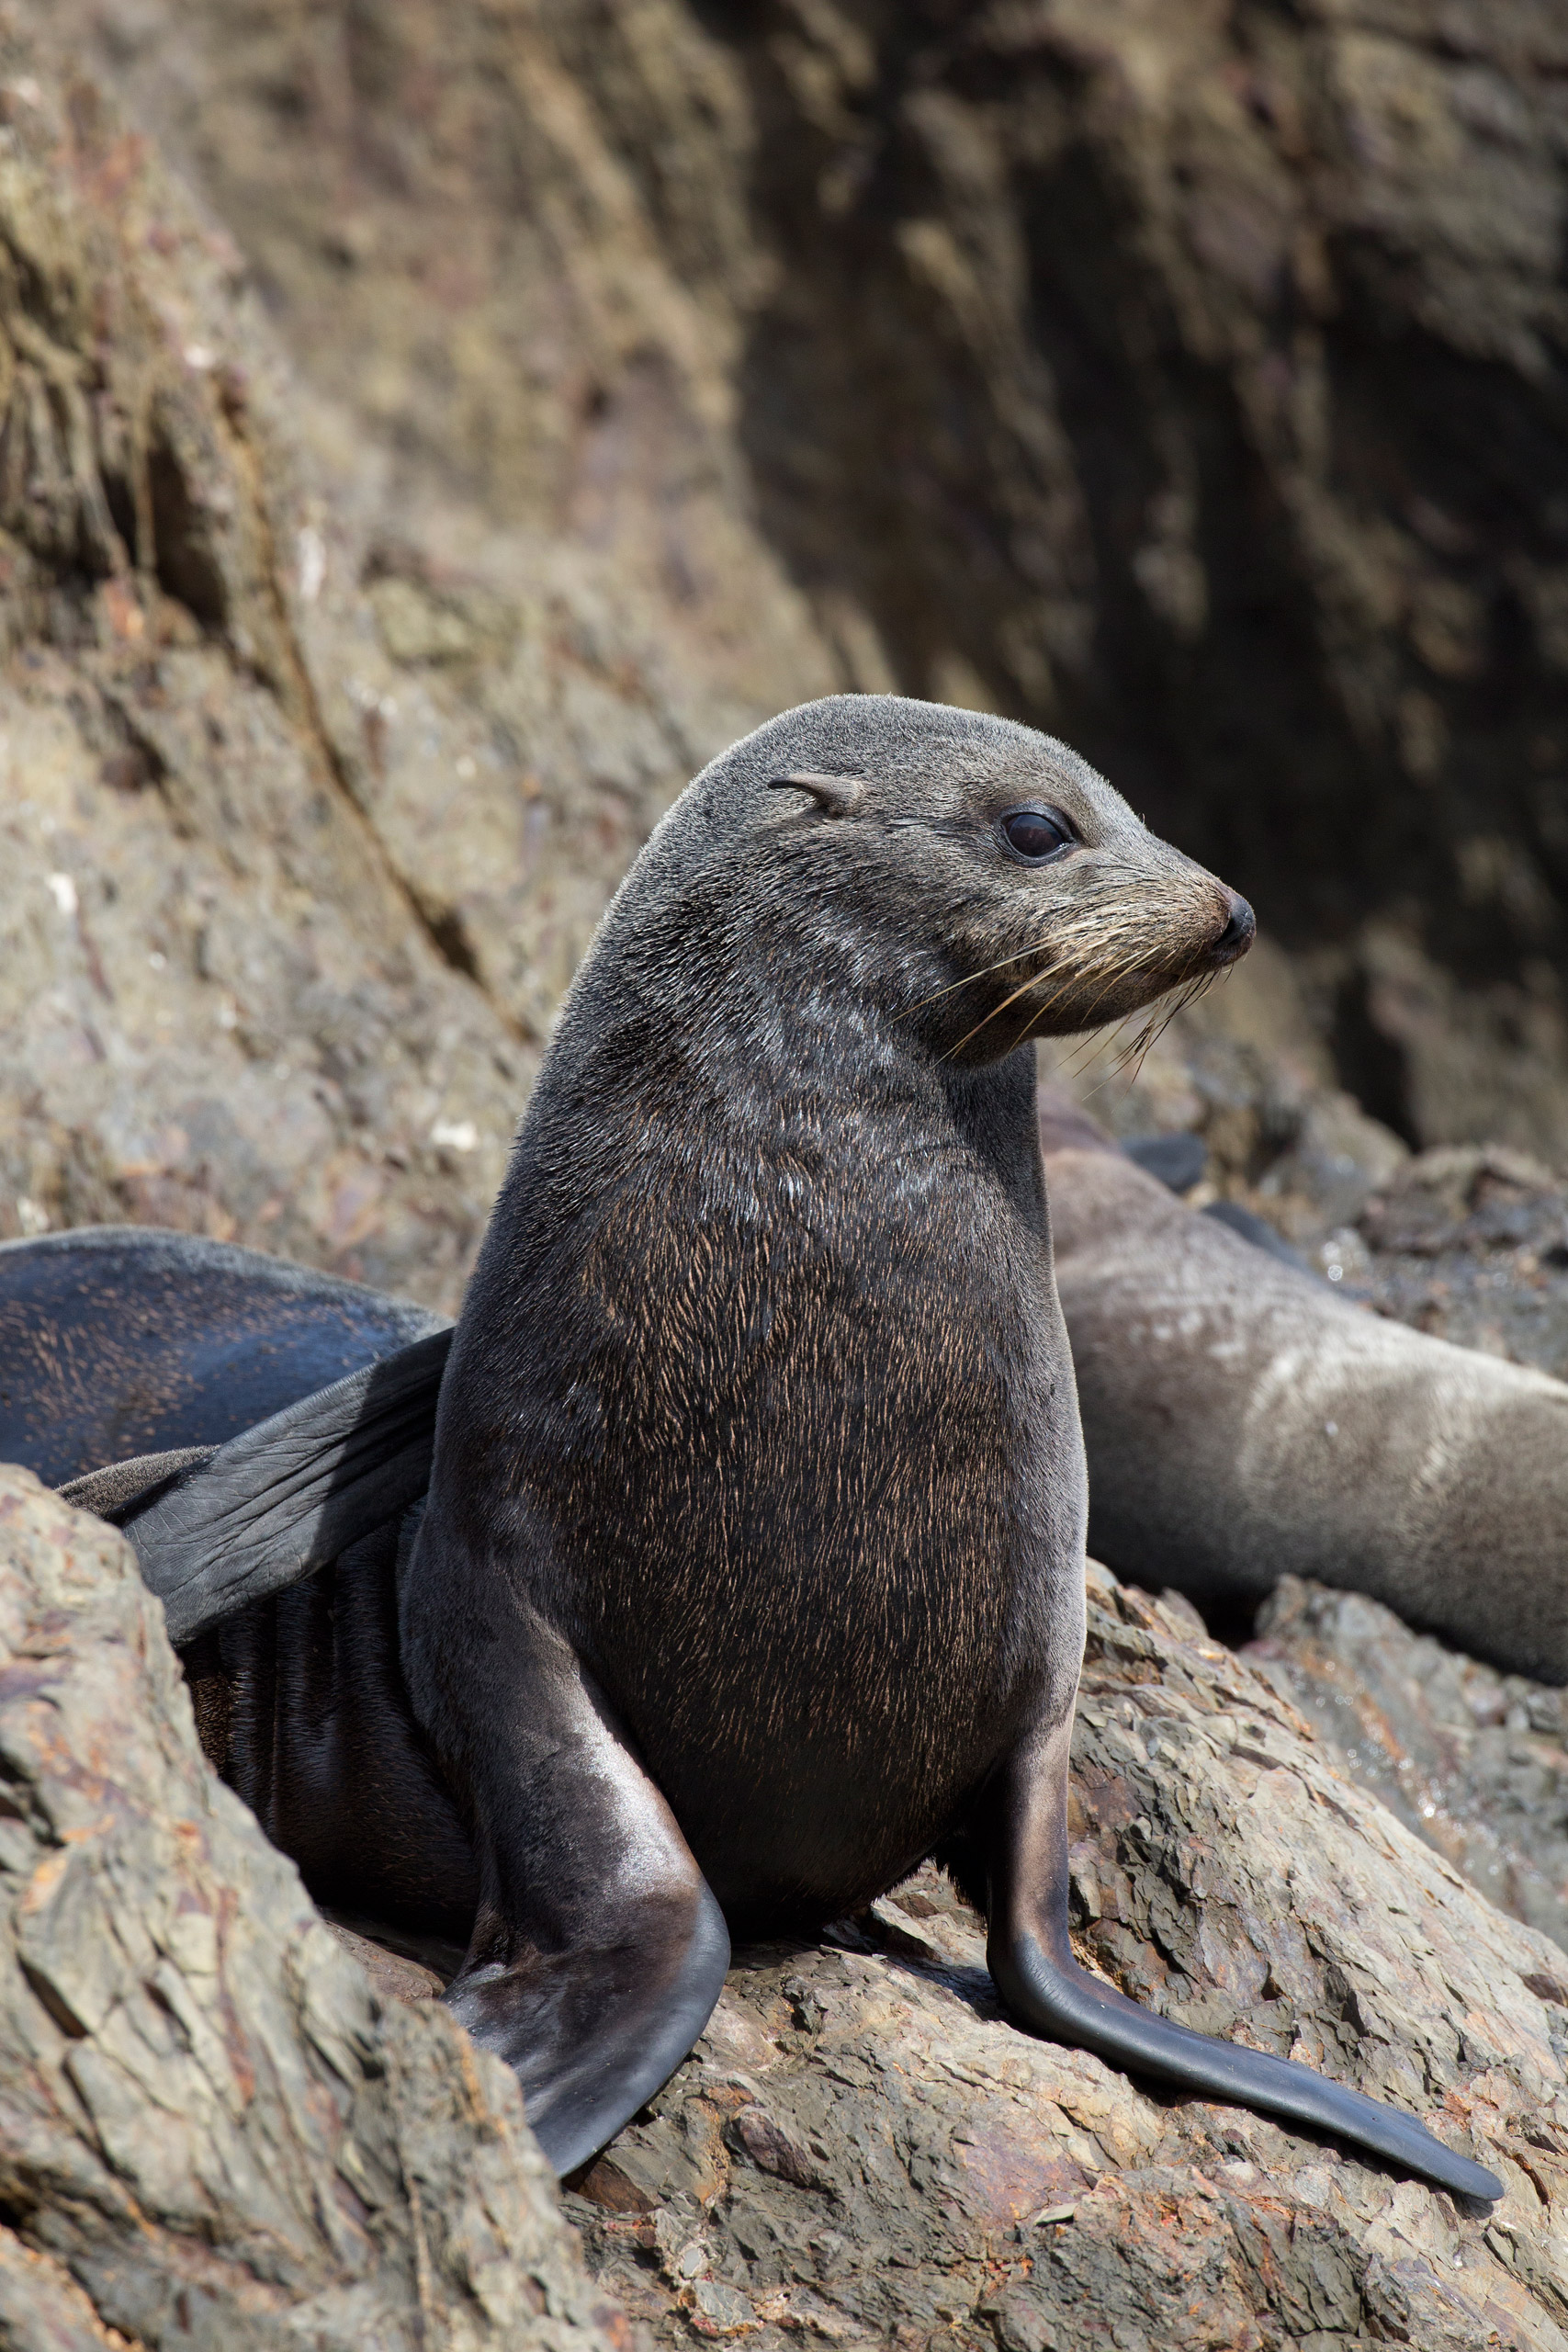 Guadalupe Fur Seal, Arctocephalus philippi townsendi